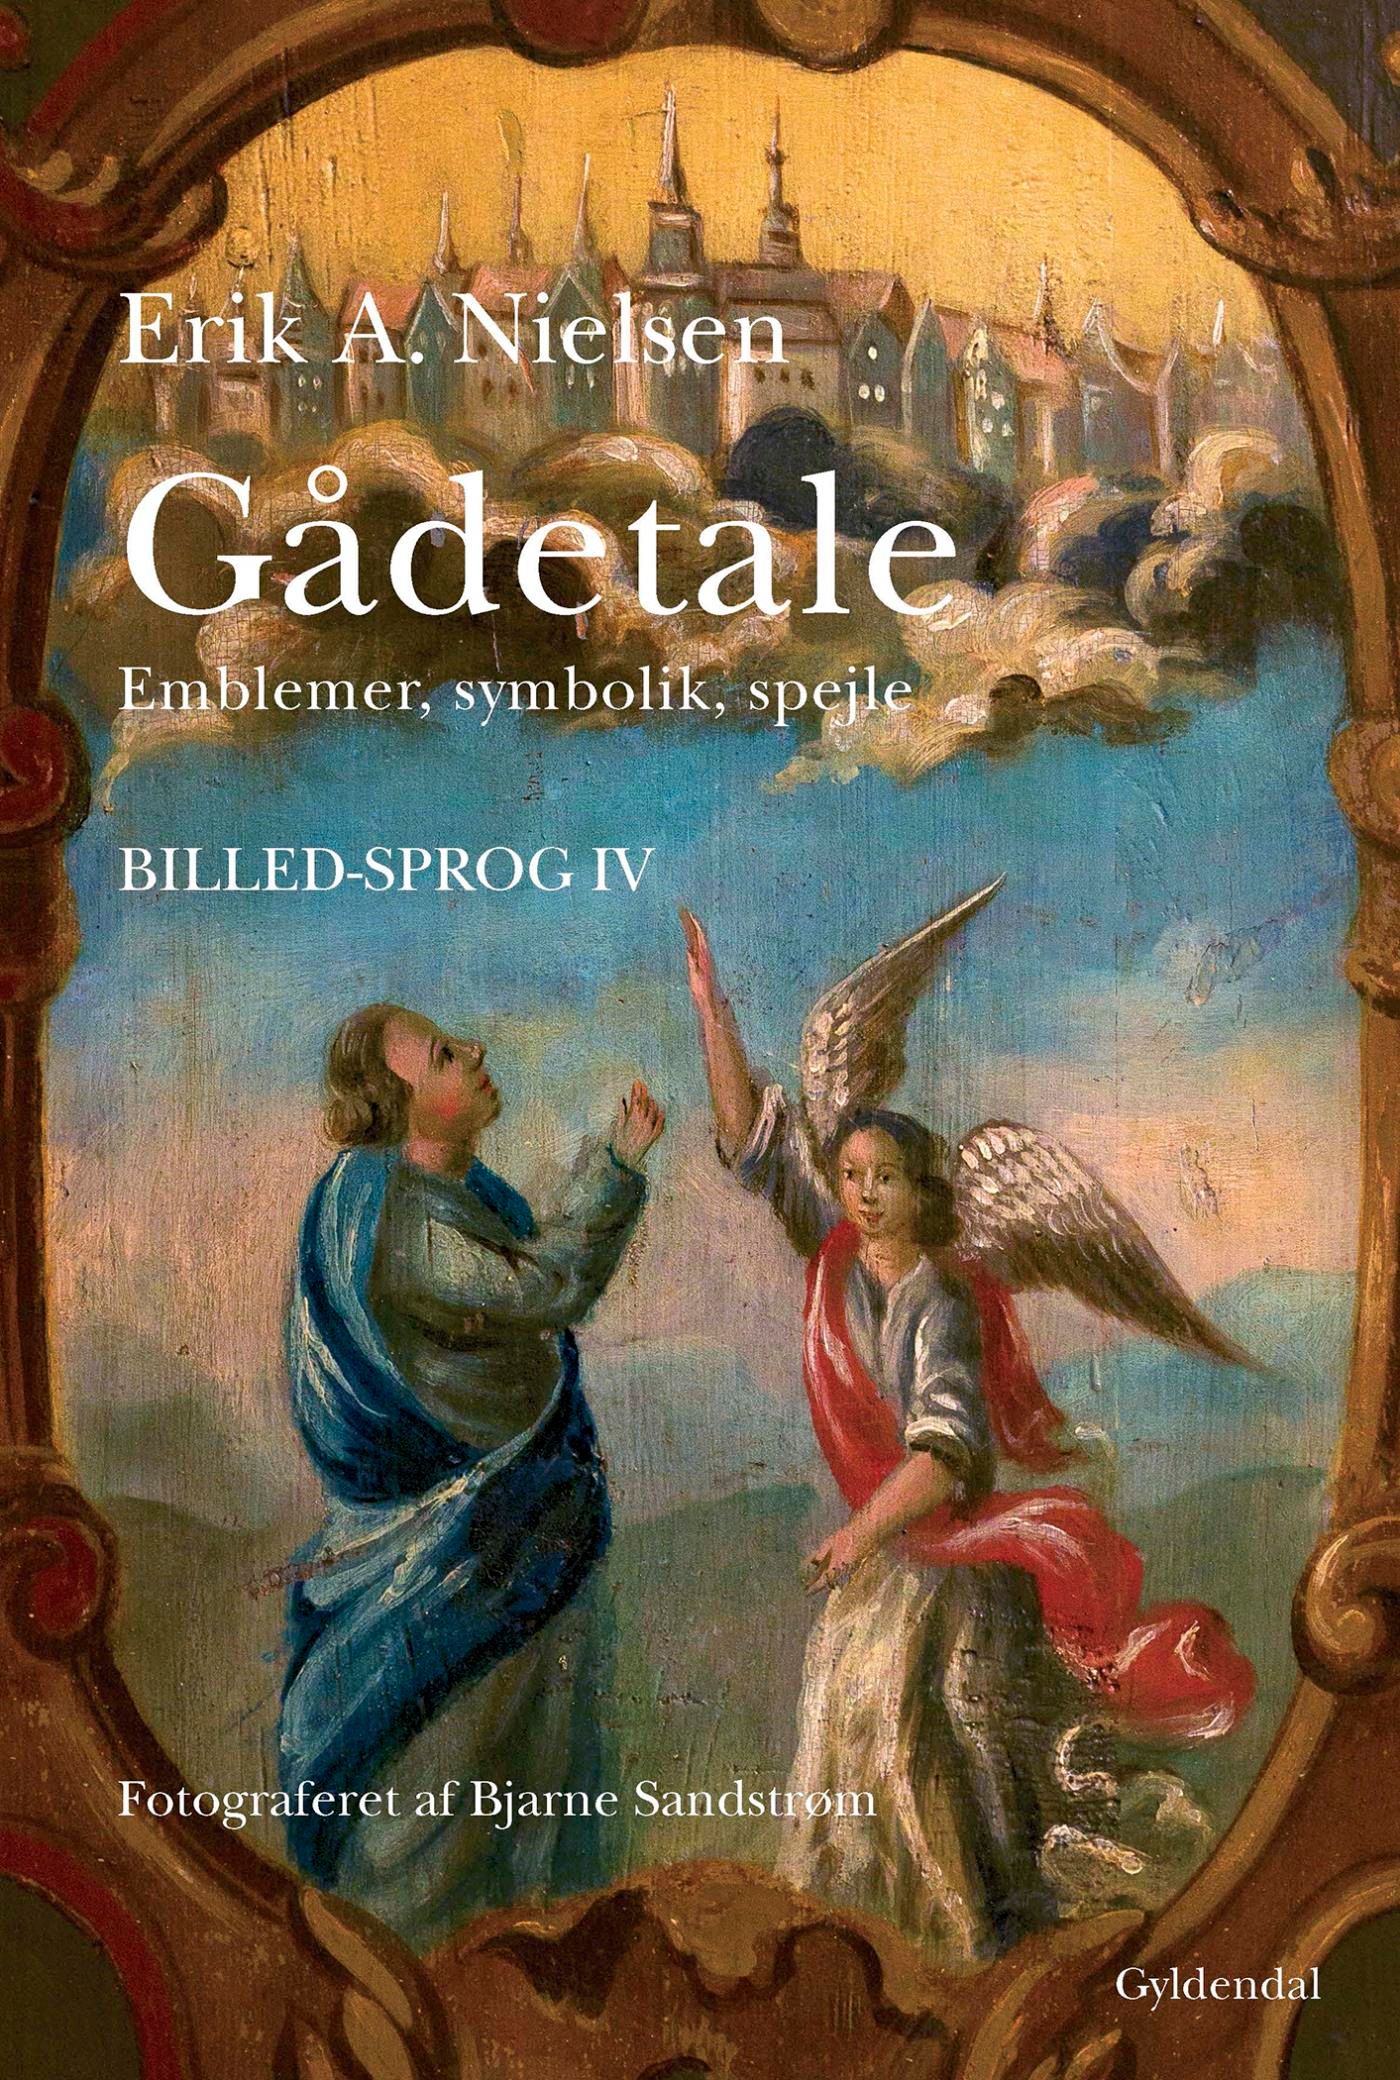 Gådetale, eBook by Erik A. Nielsen